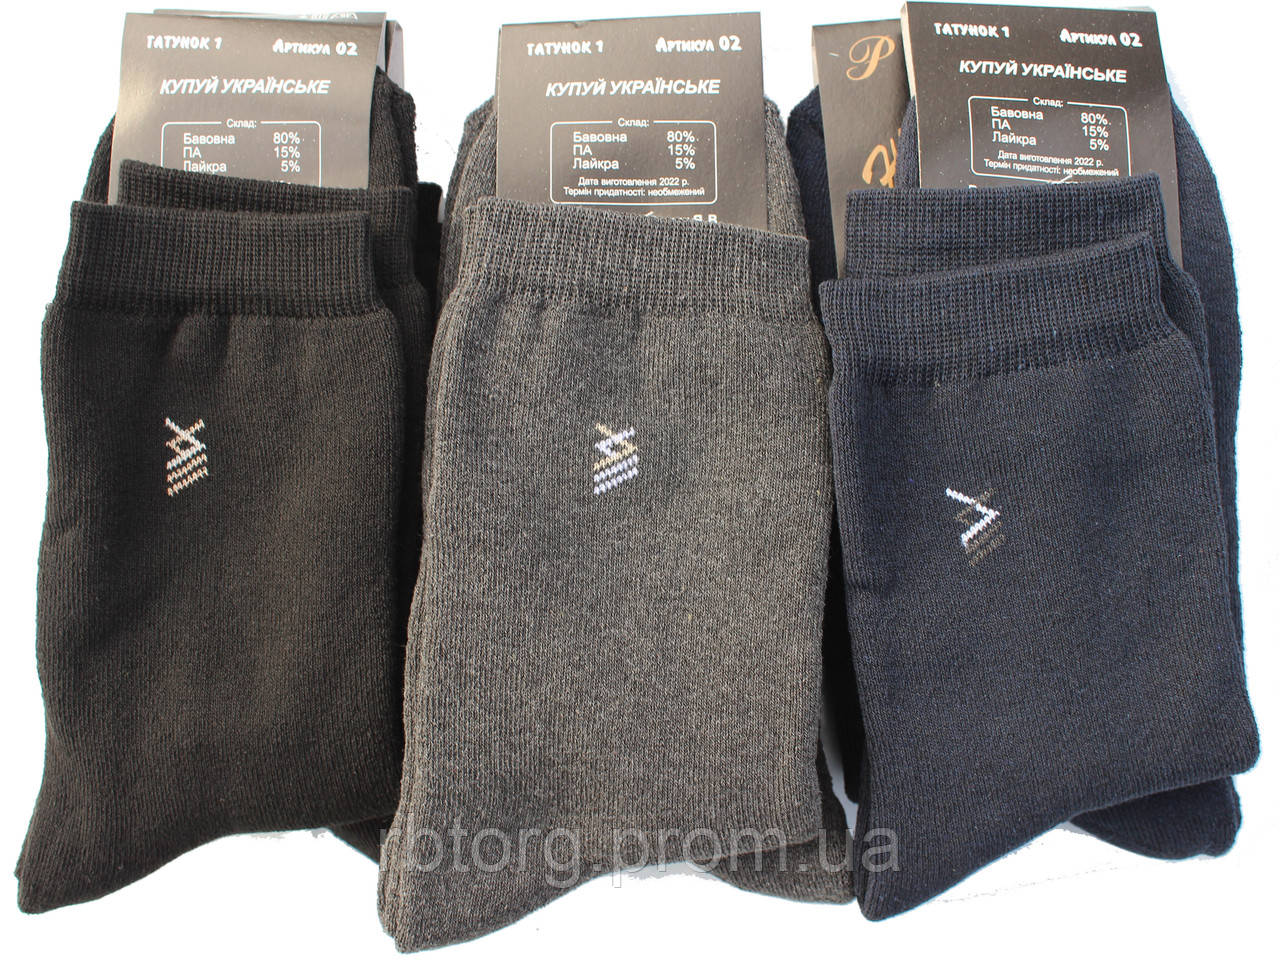 Шкарпетки чоловічі зимові махрові високі, 42-44 розмір, 6 пар. Житомир Термо